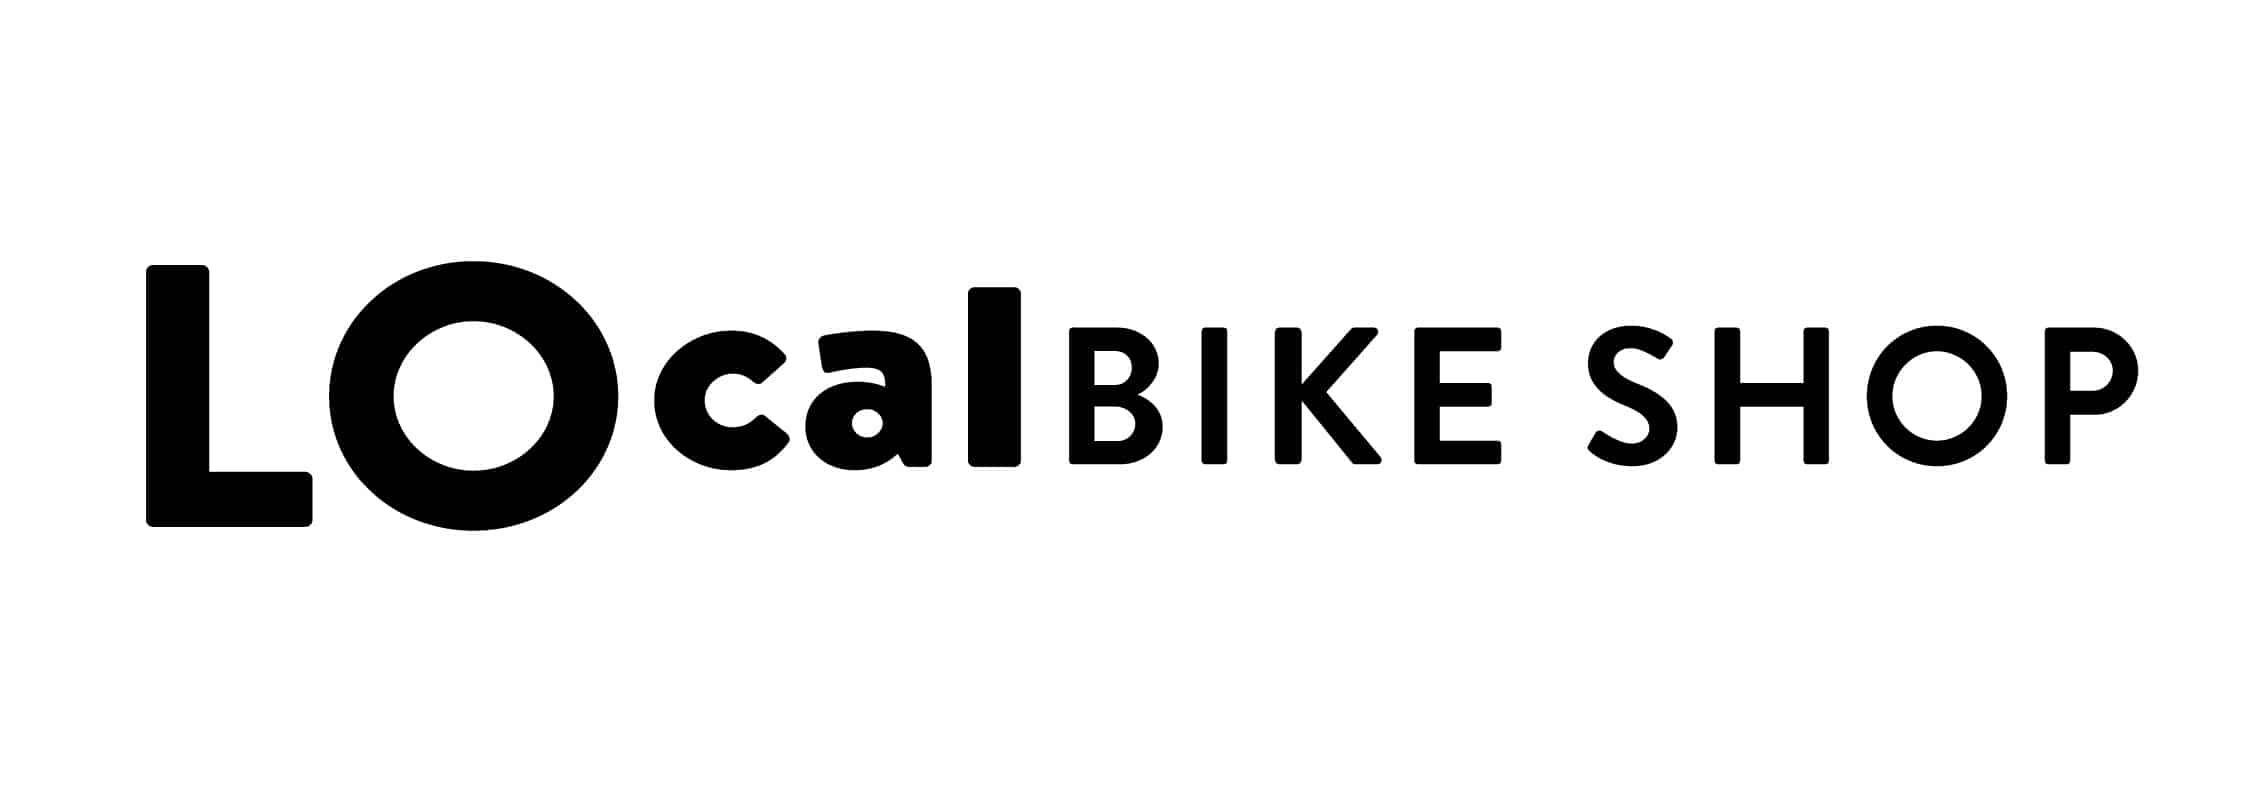 LO_Bike_Shop_Logo_Branding_By_Stellen_Design_Word_Mark_Logo_Deisgn